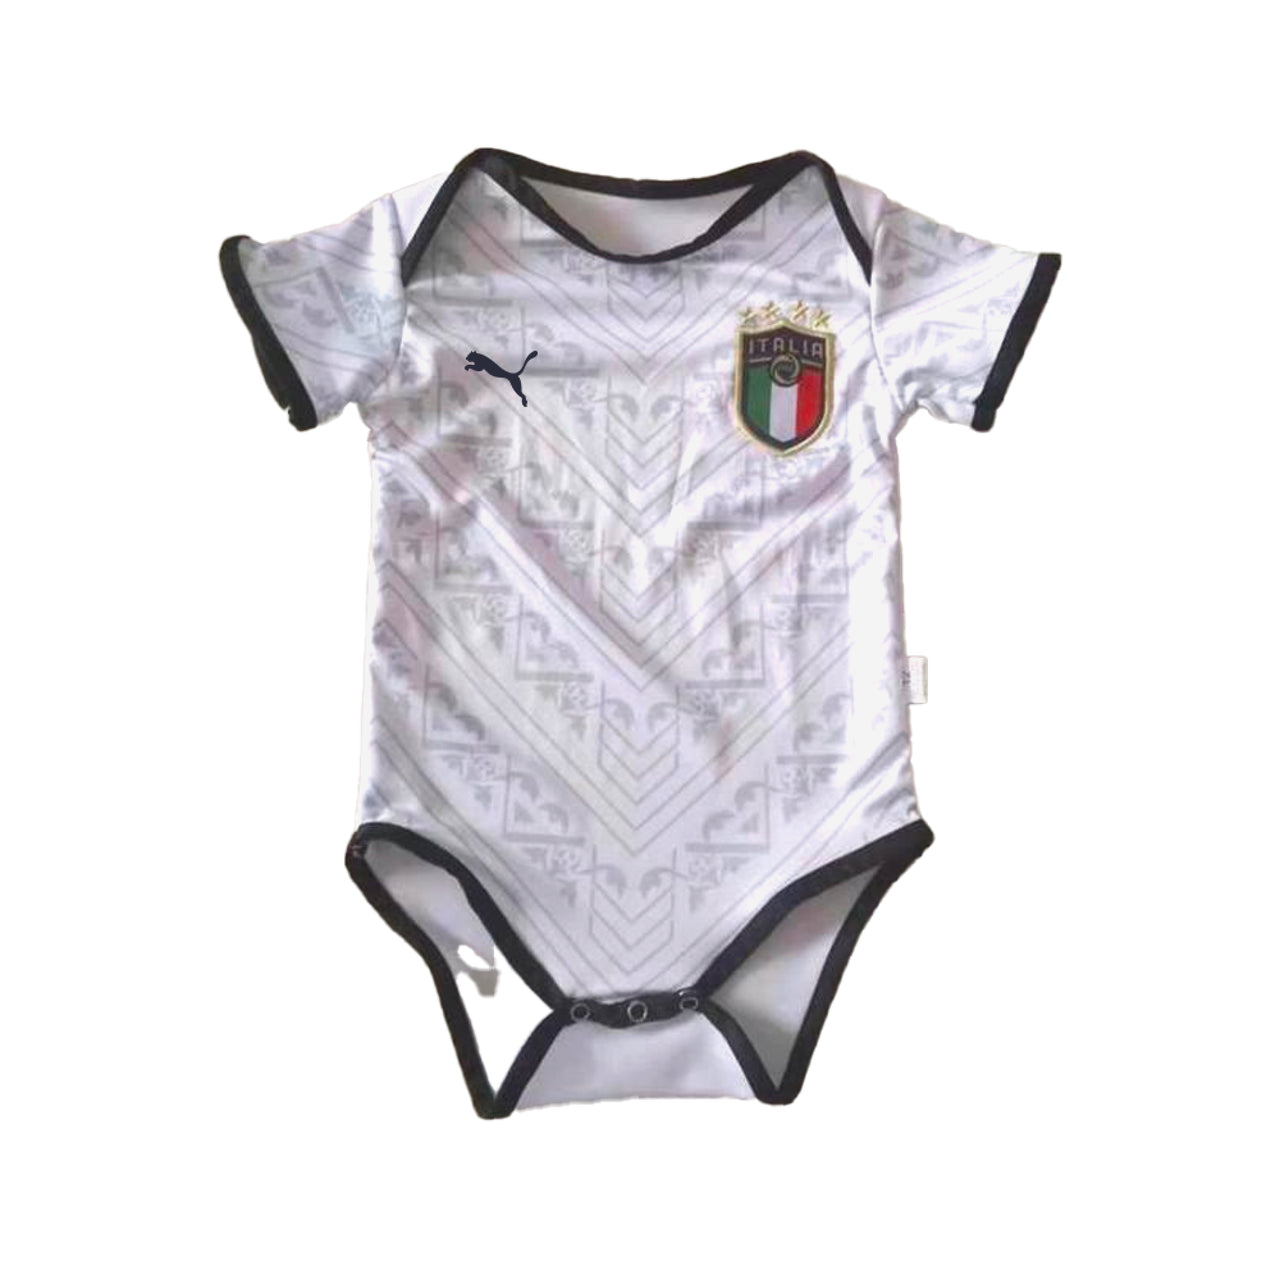 Italia Baby Jersey Away 2020 - Mitani Store